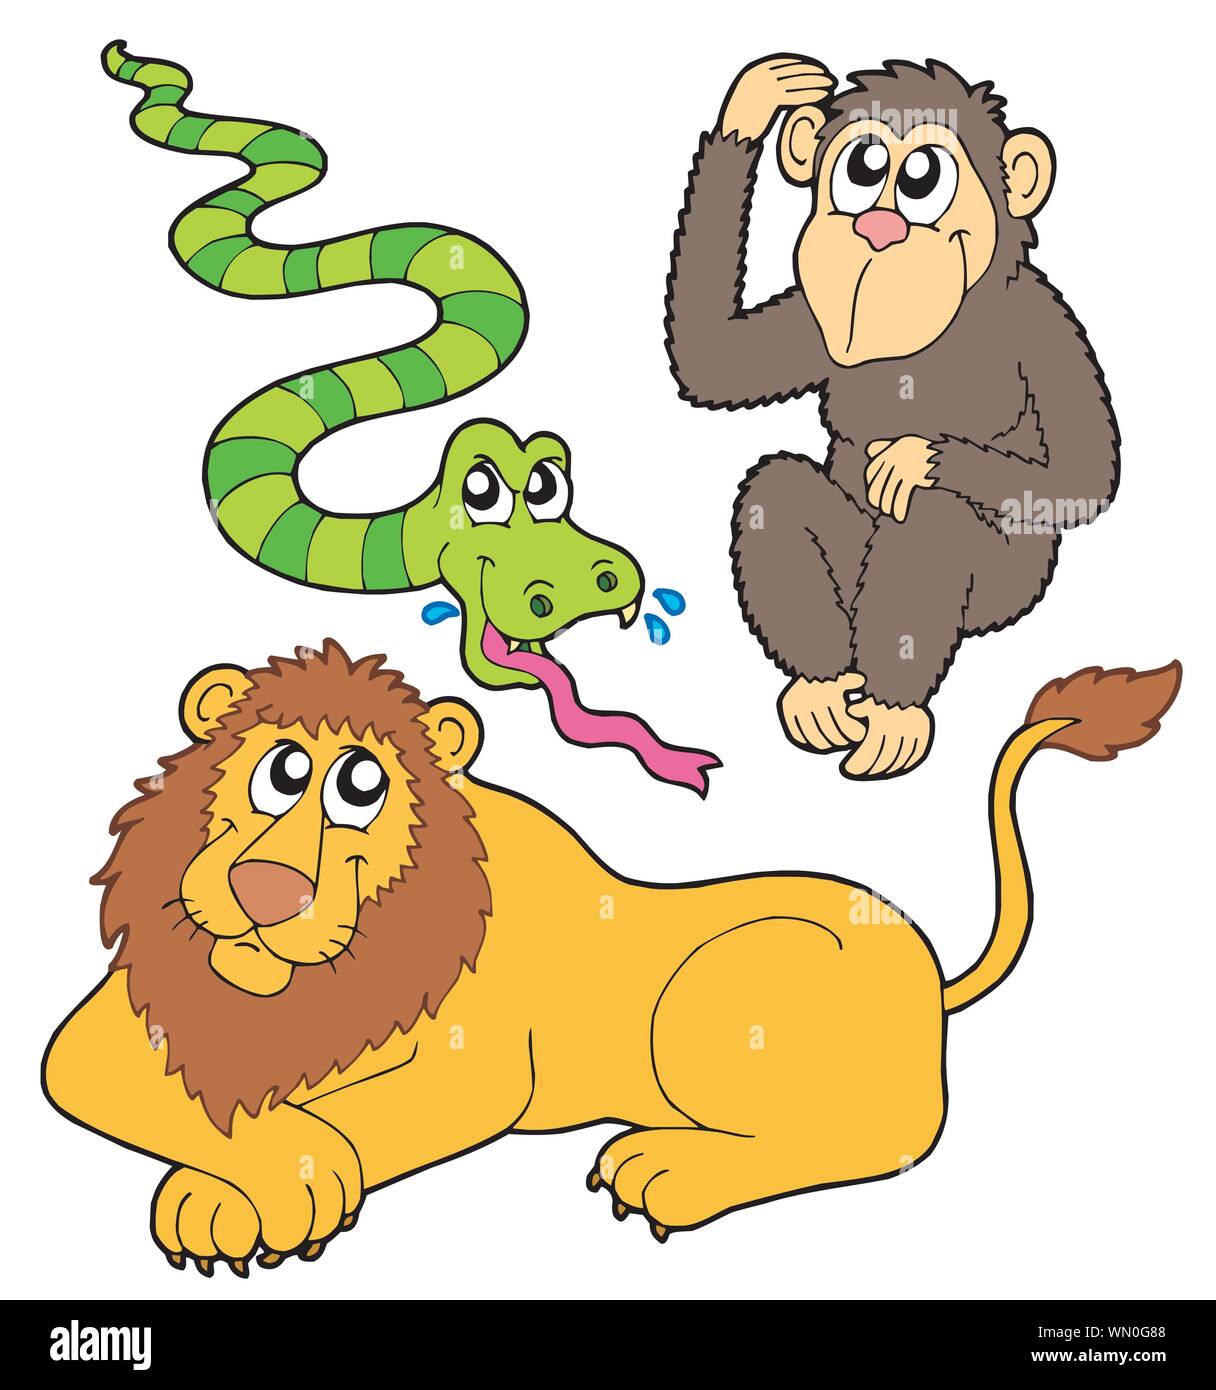 Год змеи обезьяна. Лев и обезьянка. Картина обезьянки и змея.